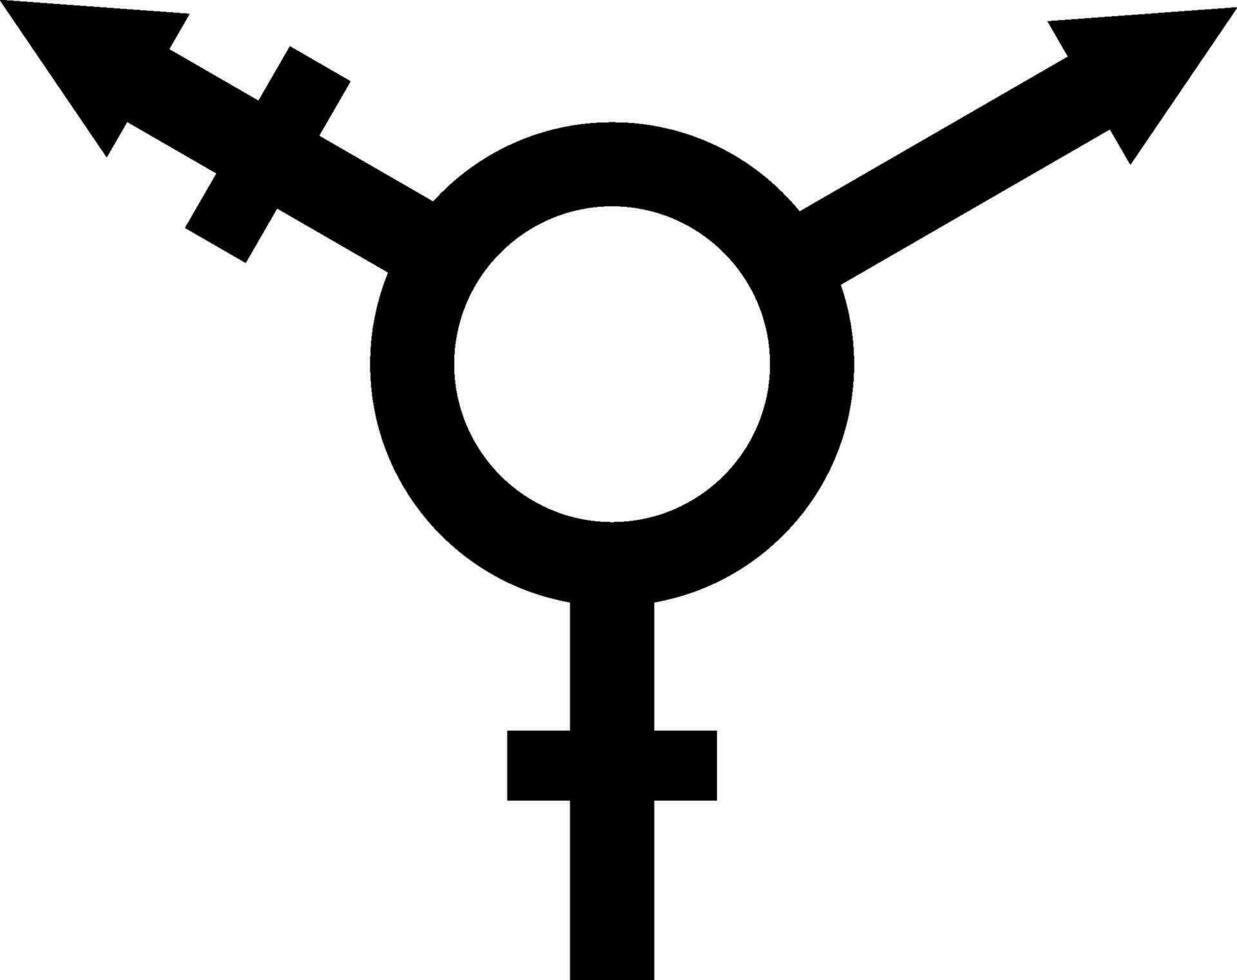 Sign symbol gender equality, Male, female transgender equality concept vector